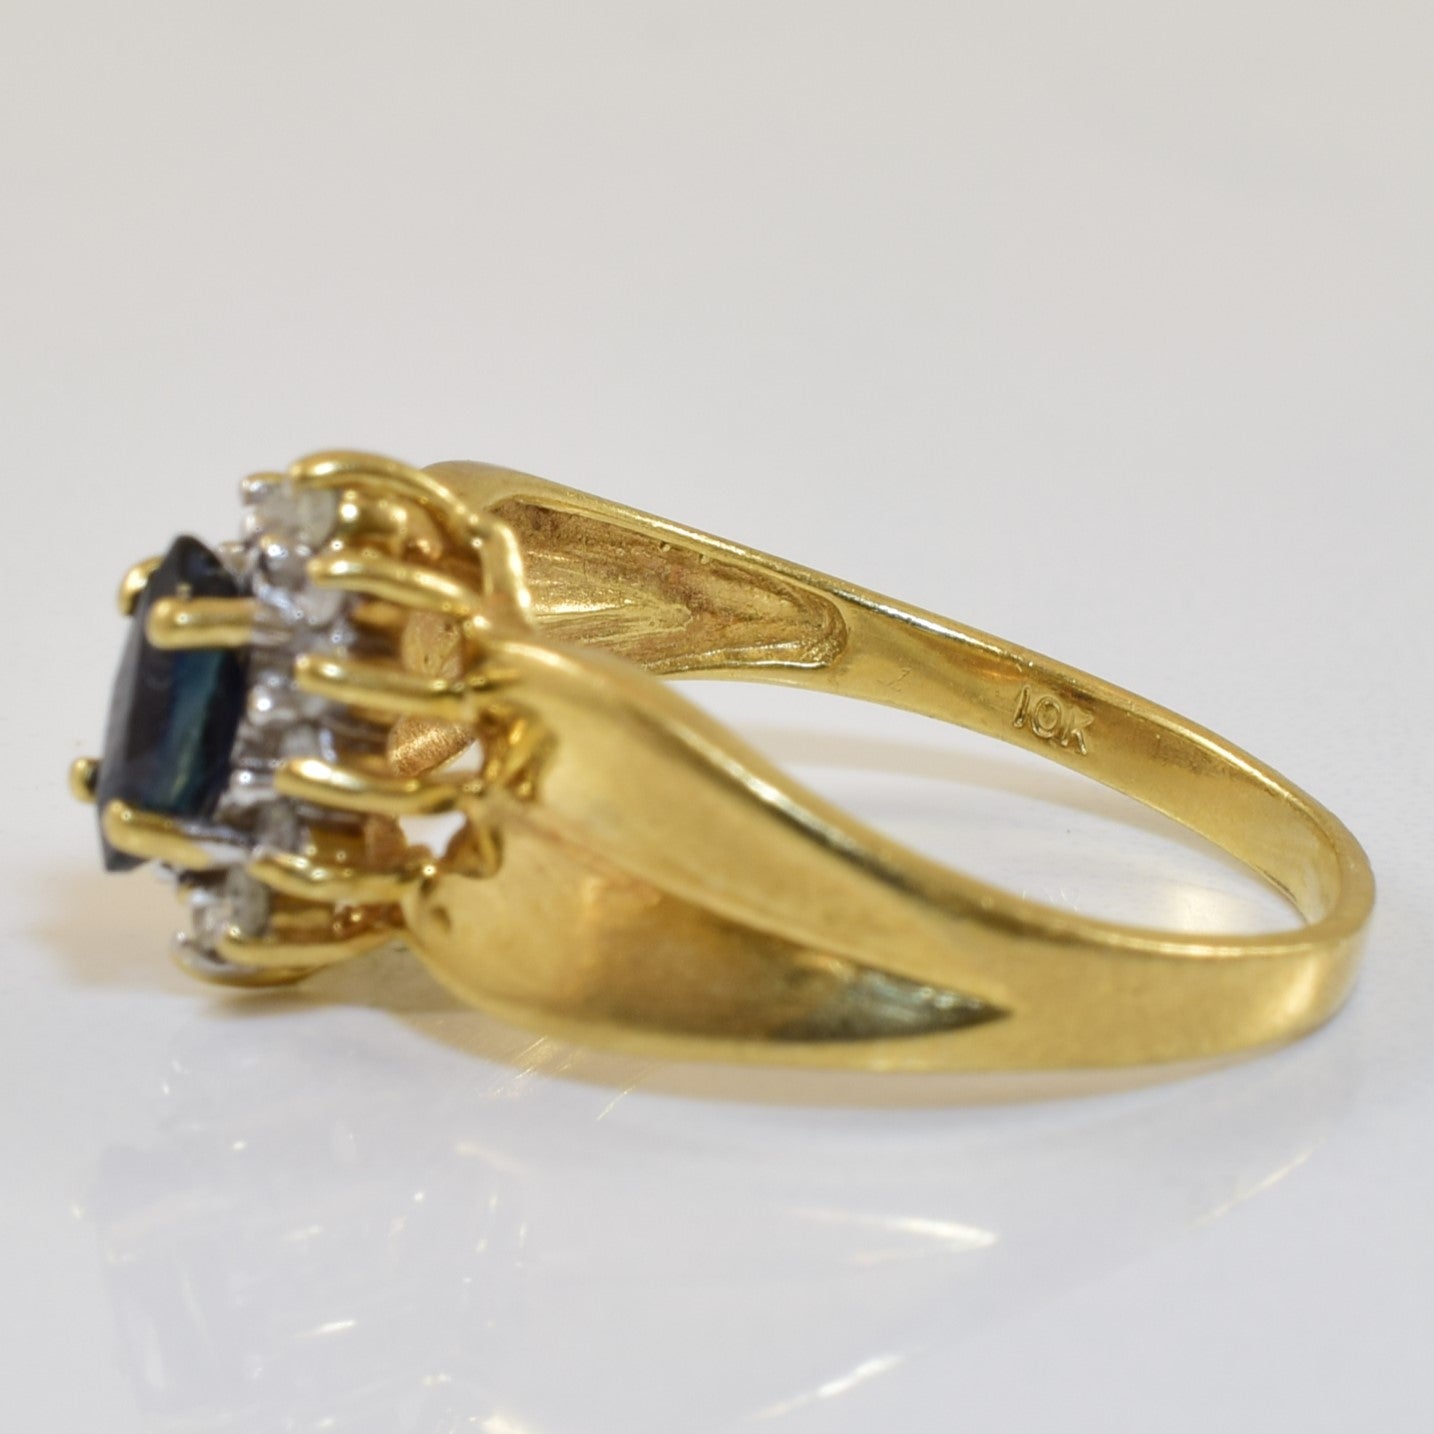 Blue Sapphire & Diamond Halo Ring | 0.27ct, 0.10ctw | SZ 5.5 |